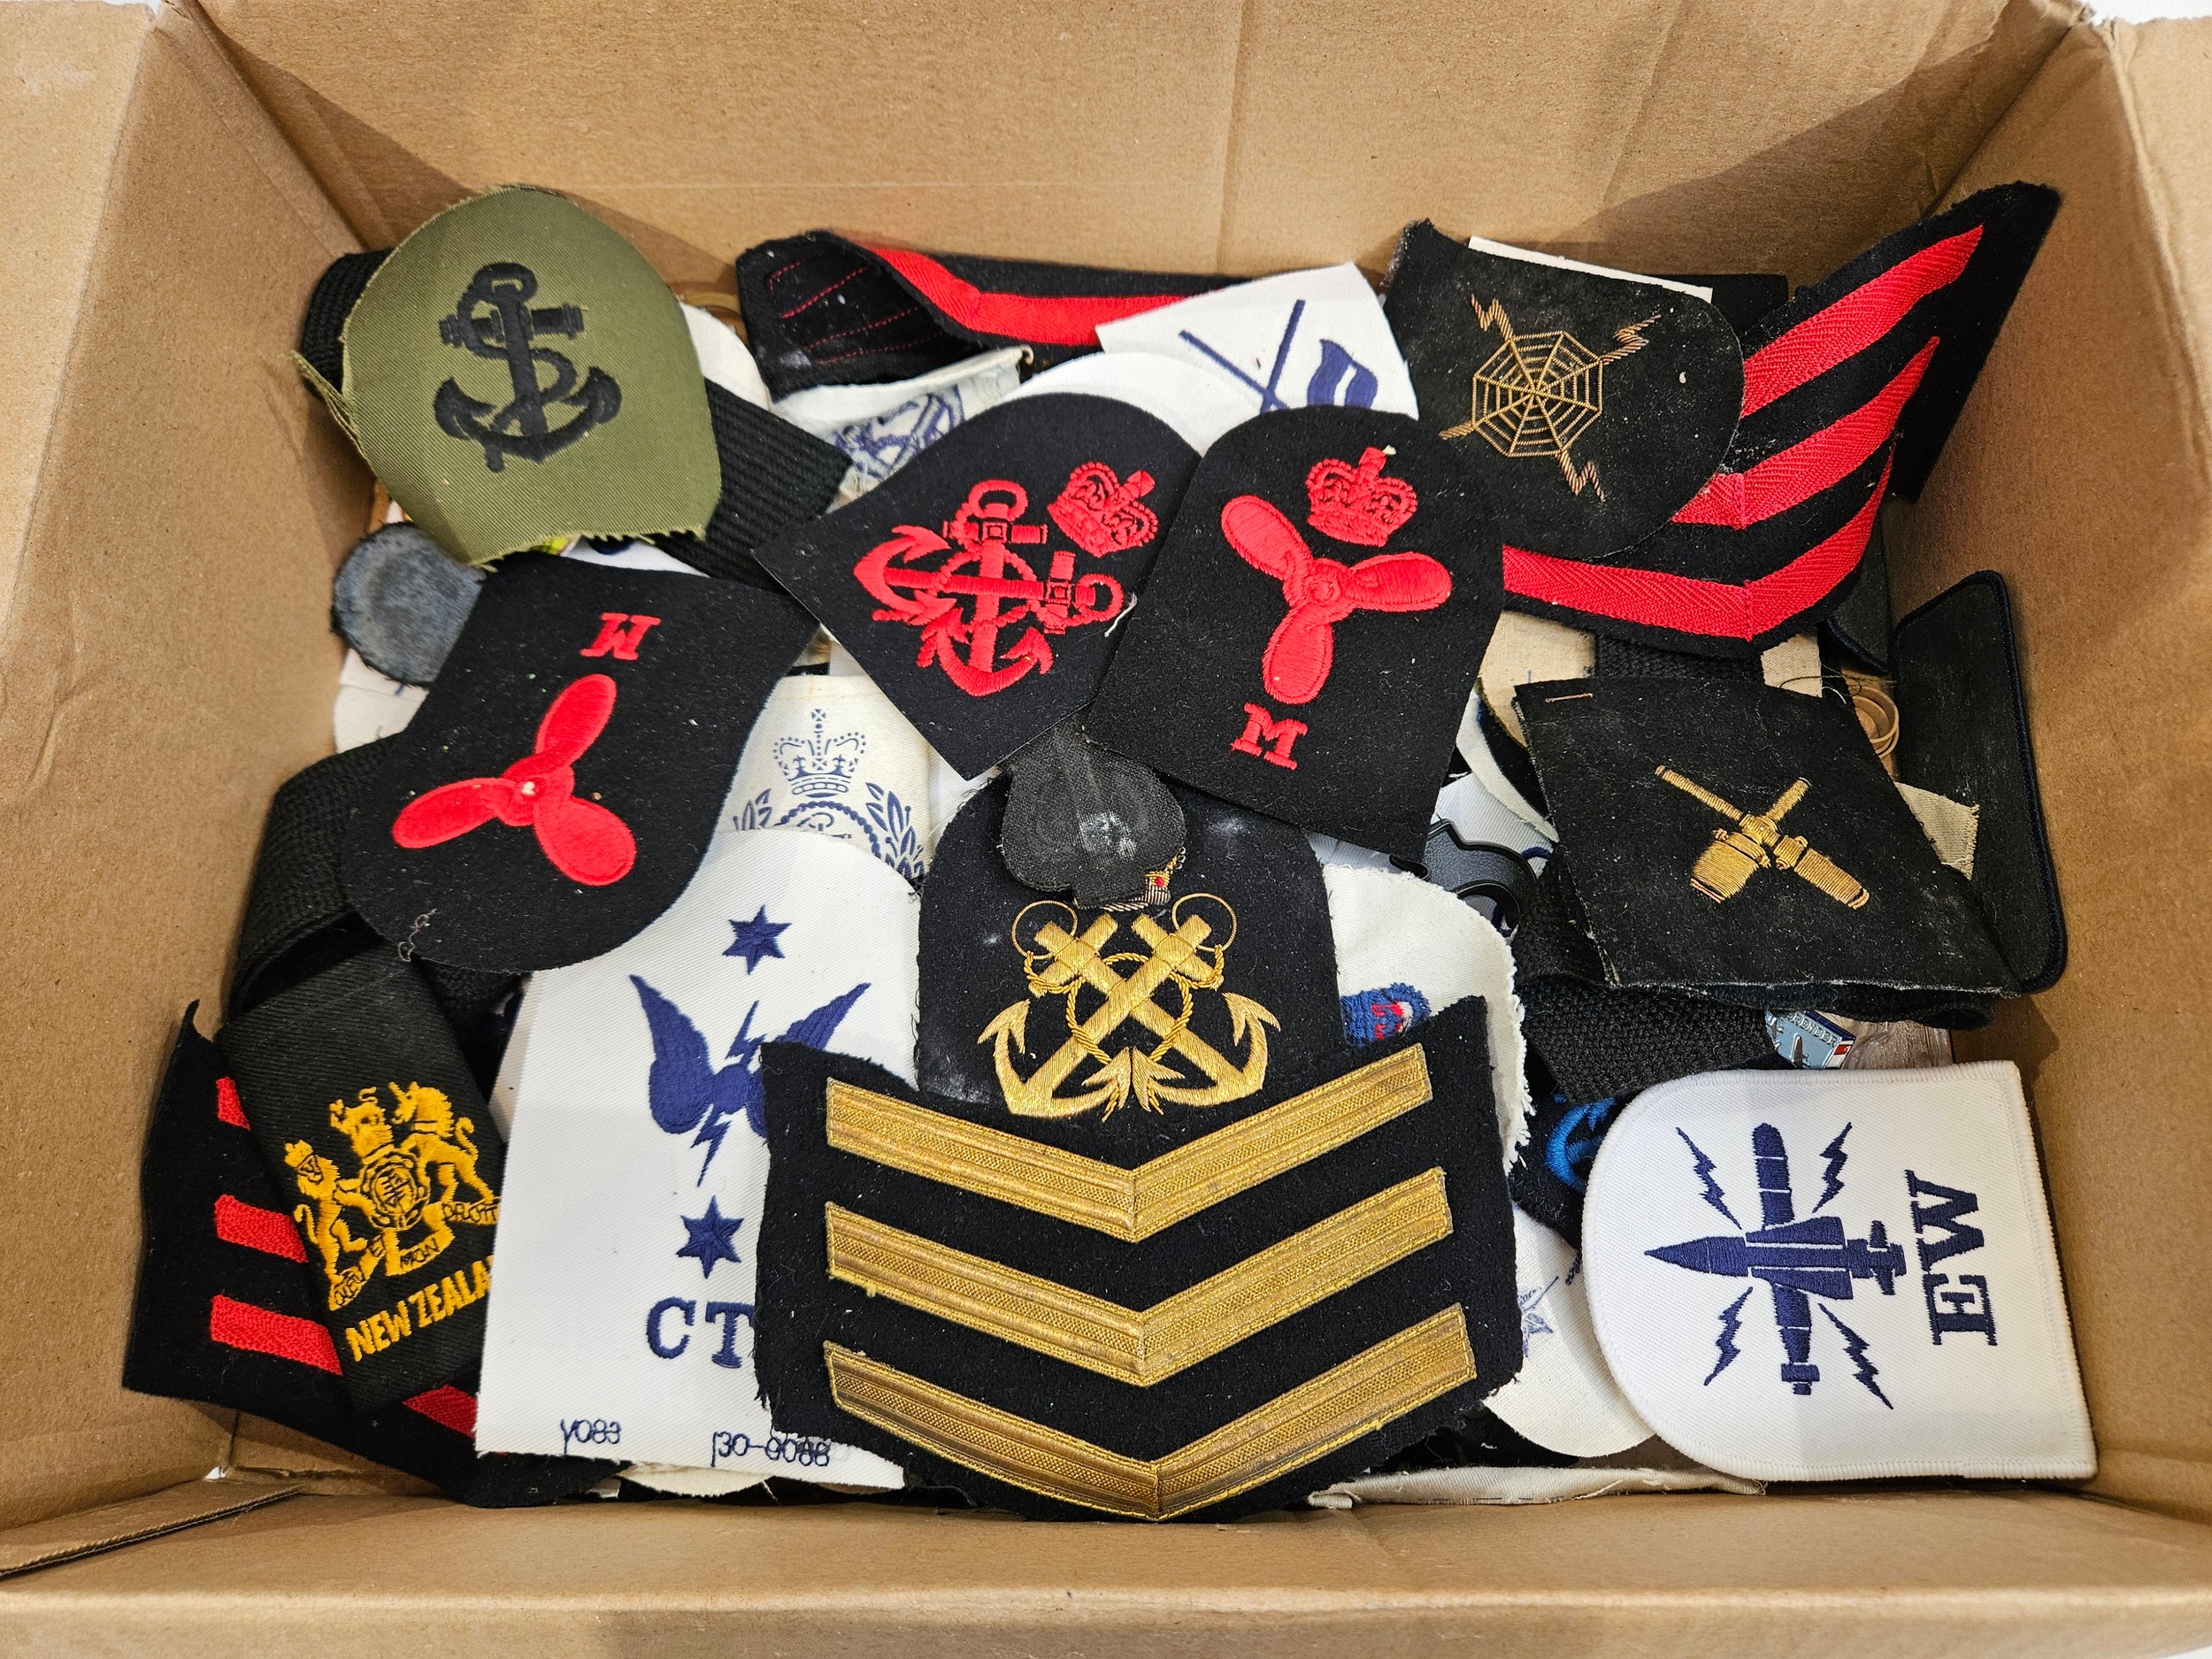 A box of mixed Royal Navy insignia